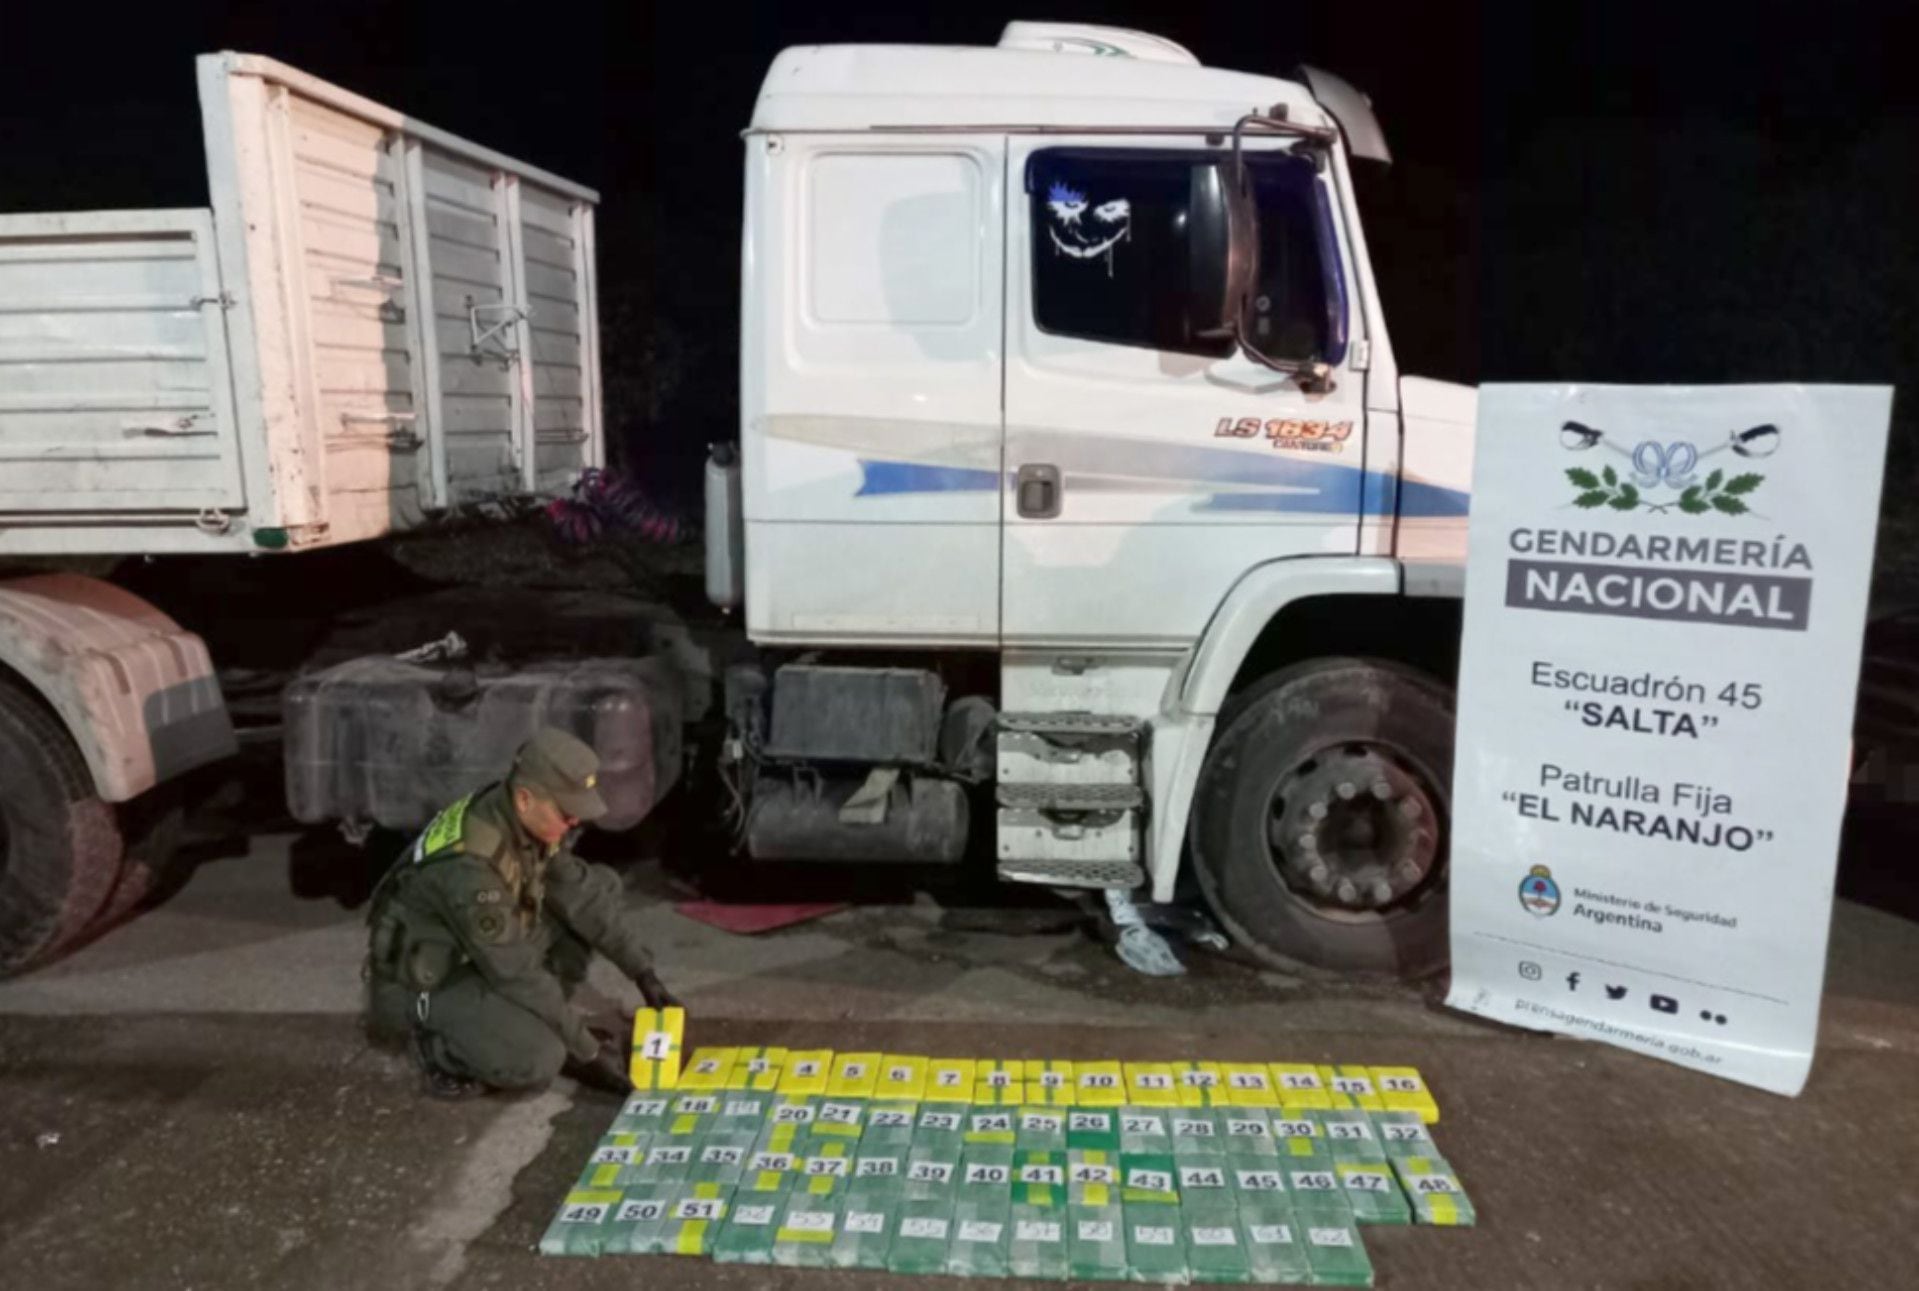 Efectivos de Gendarmería encontraron 65 kilos de cocaína ocultos en el chasis de un camión en Salta (GNA)